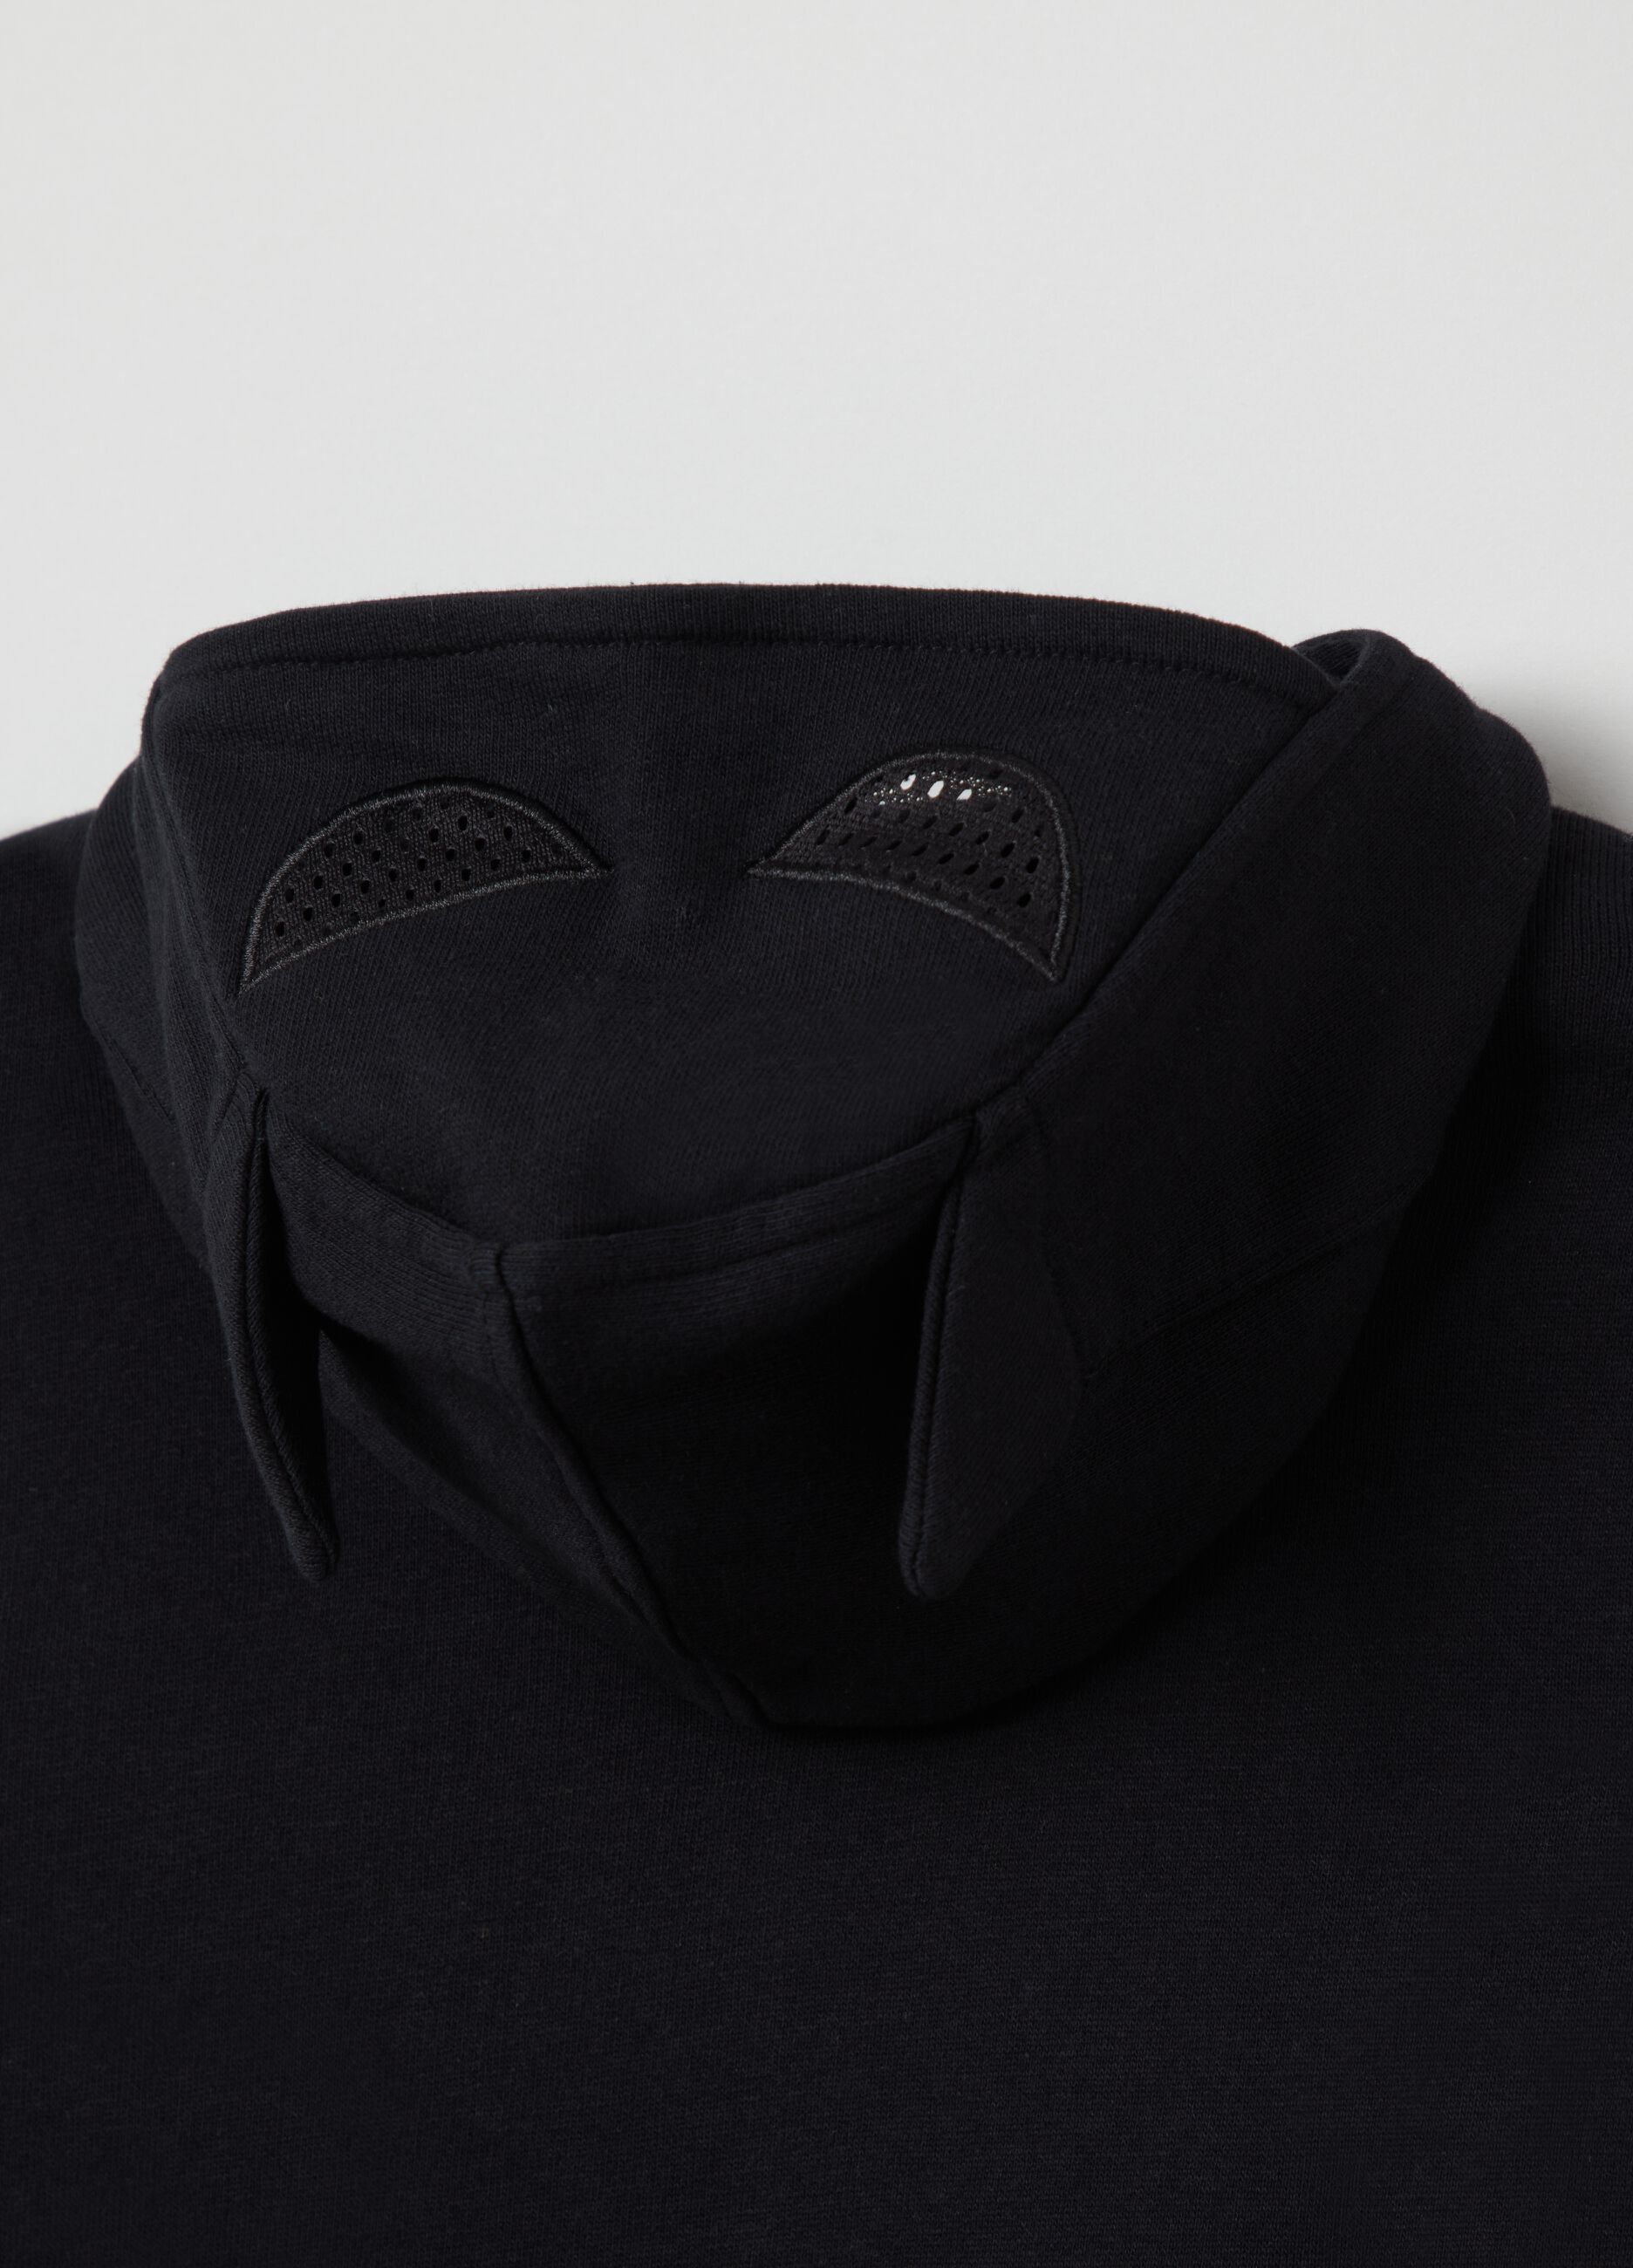 Full-zip hoodie with Batman print